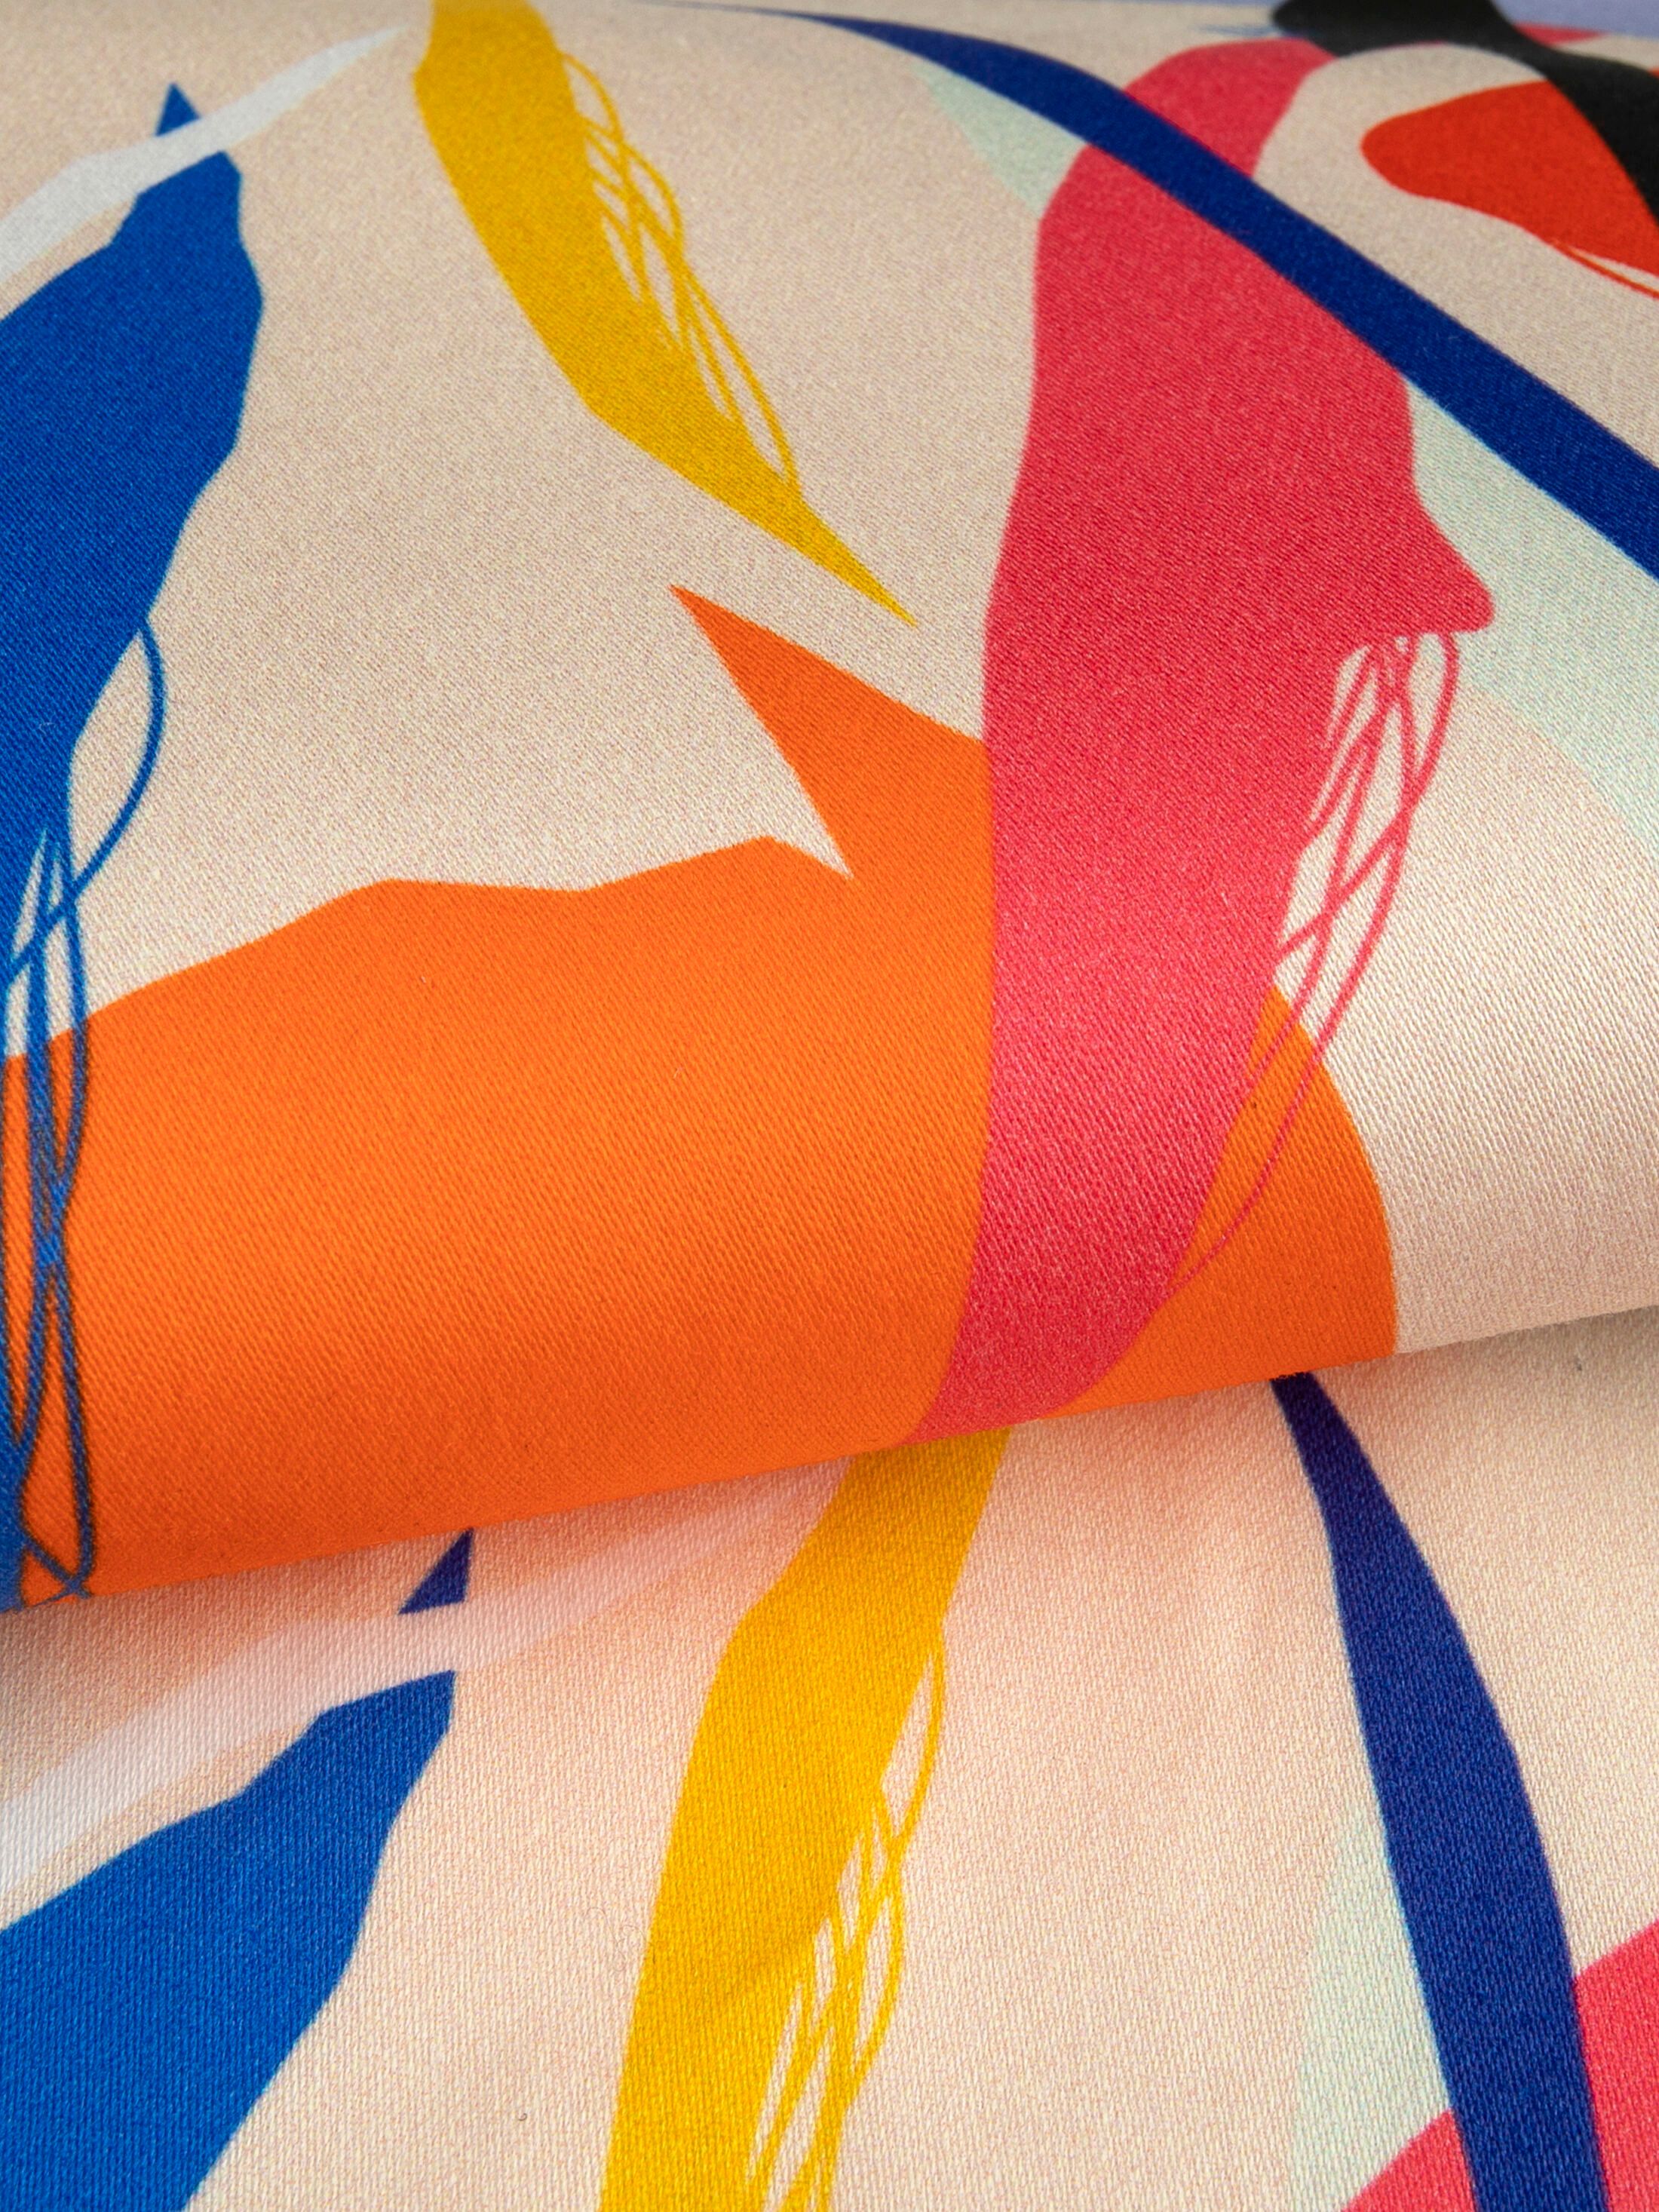 impreso tela de sarga de algodón de colores